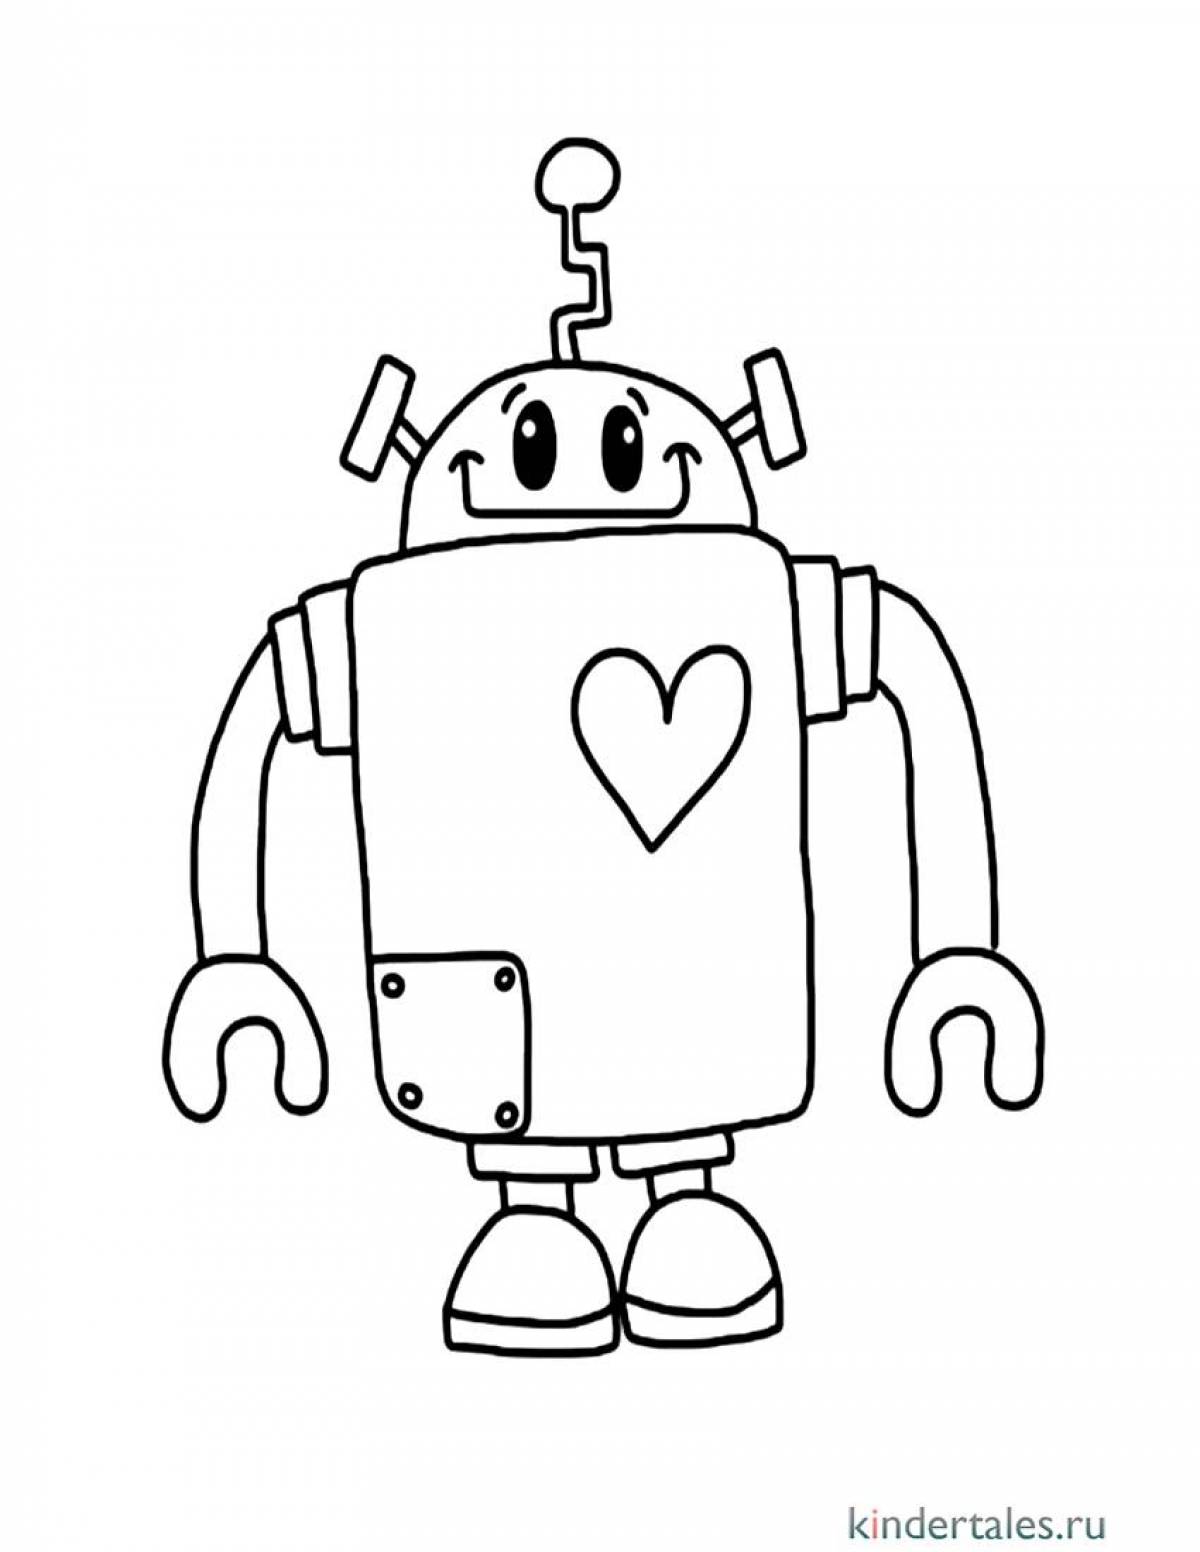 Креативная страница-раскраска роботов для детей 5-6 лет